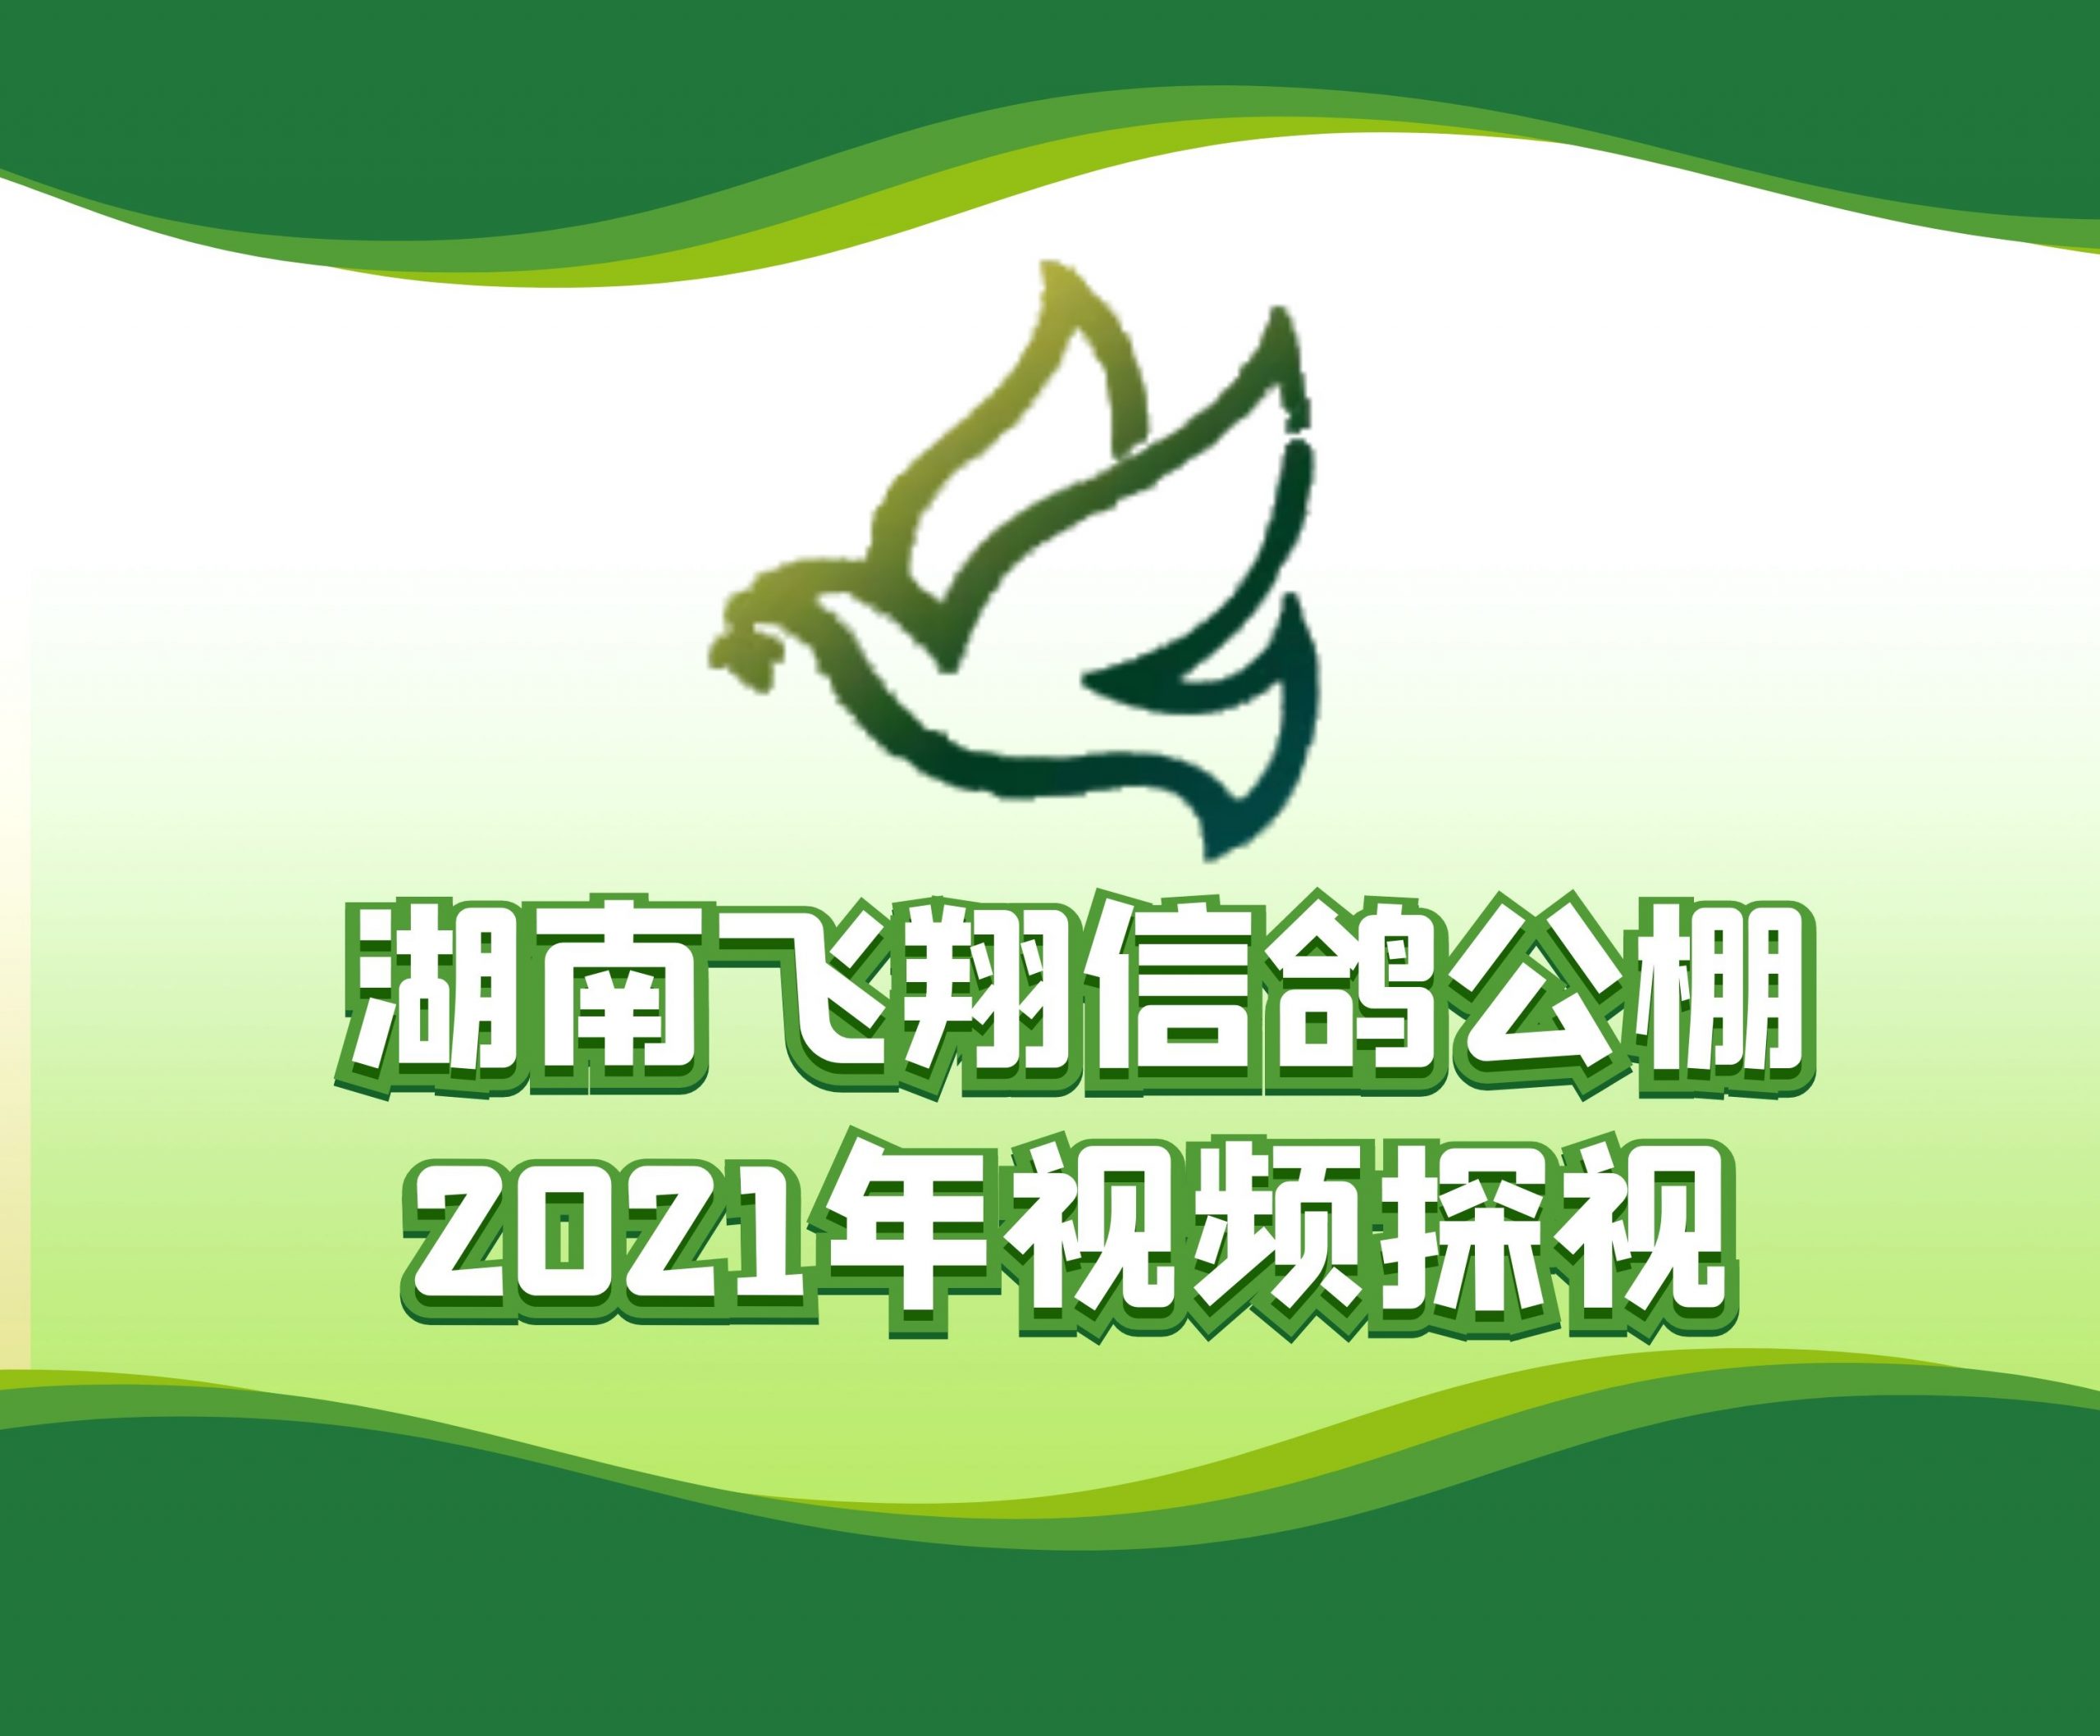 赵西林-2021-18-0056299